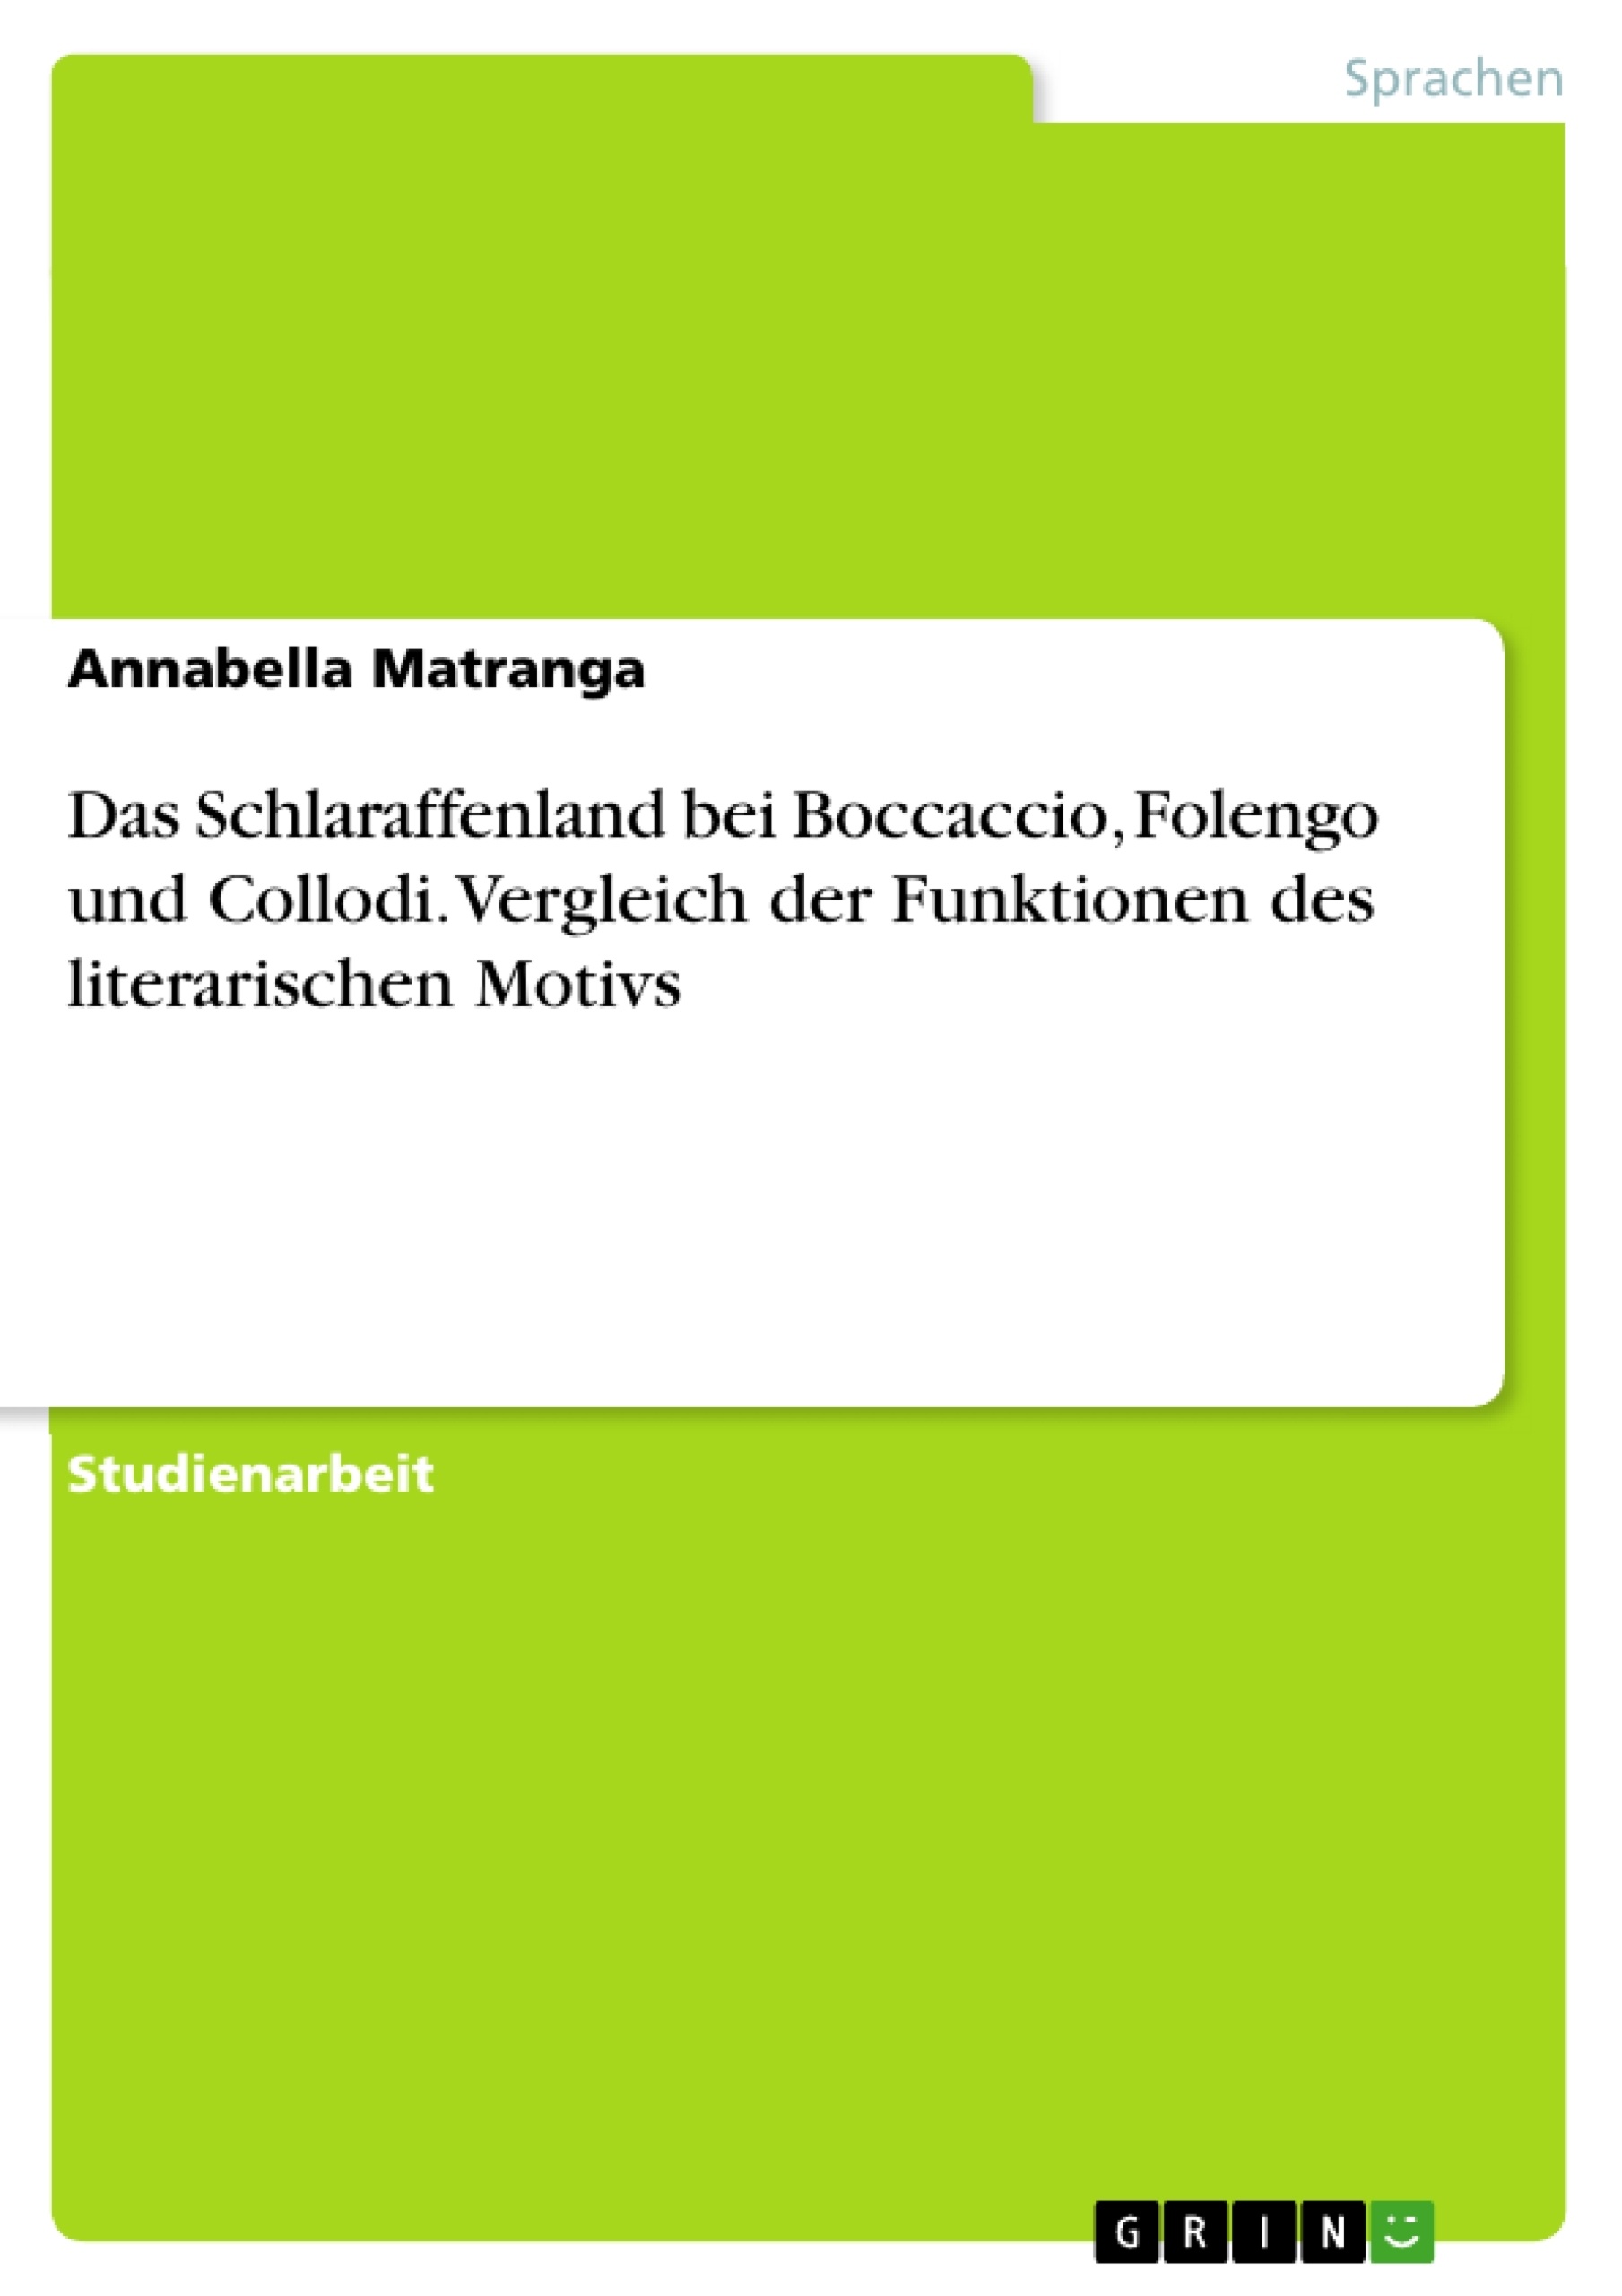 Título: Das Schlaraffenland bei Boccaccio, Folengo und Collodi. Vergleich der Funktionen des literarischen Motivs